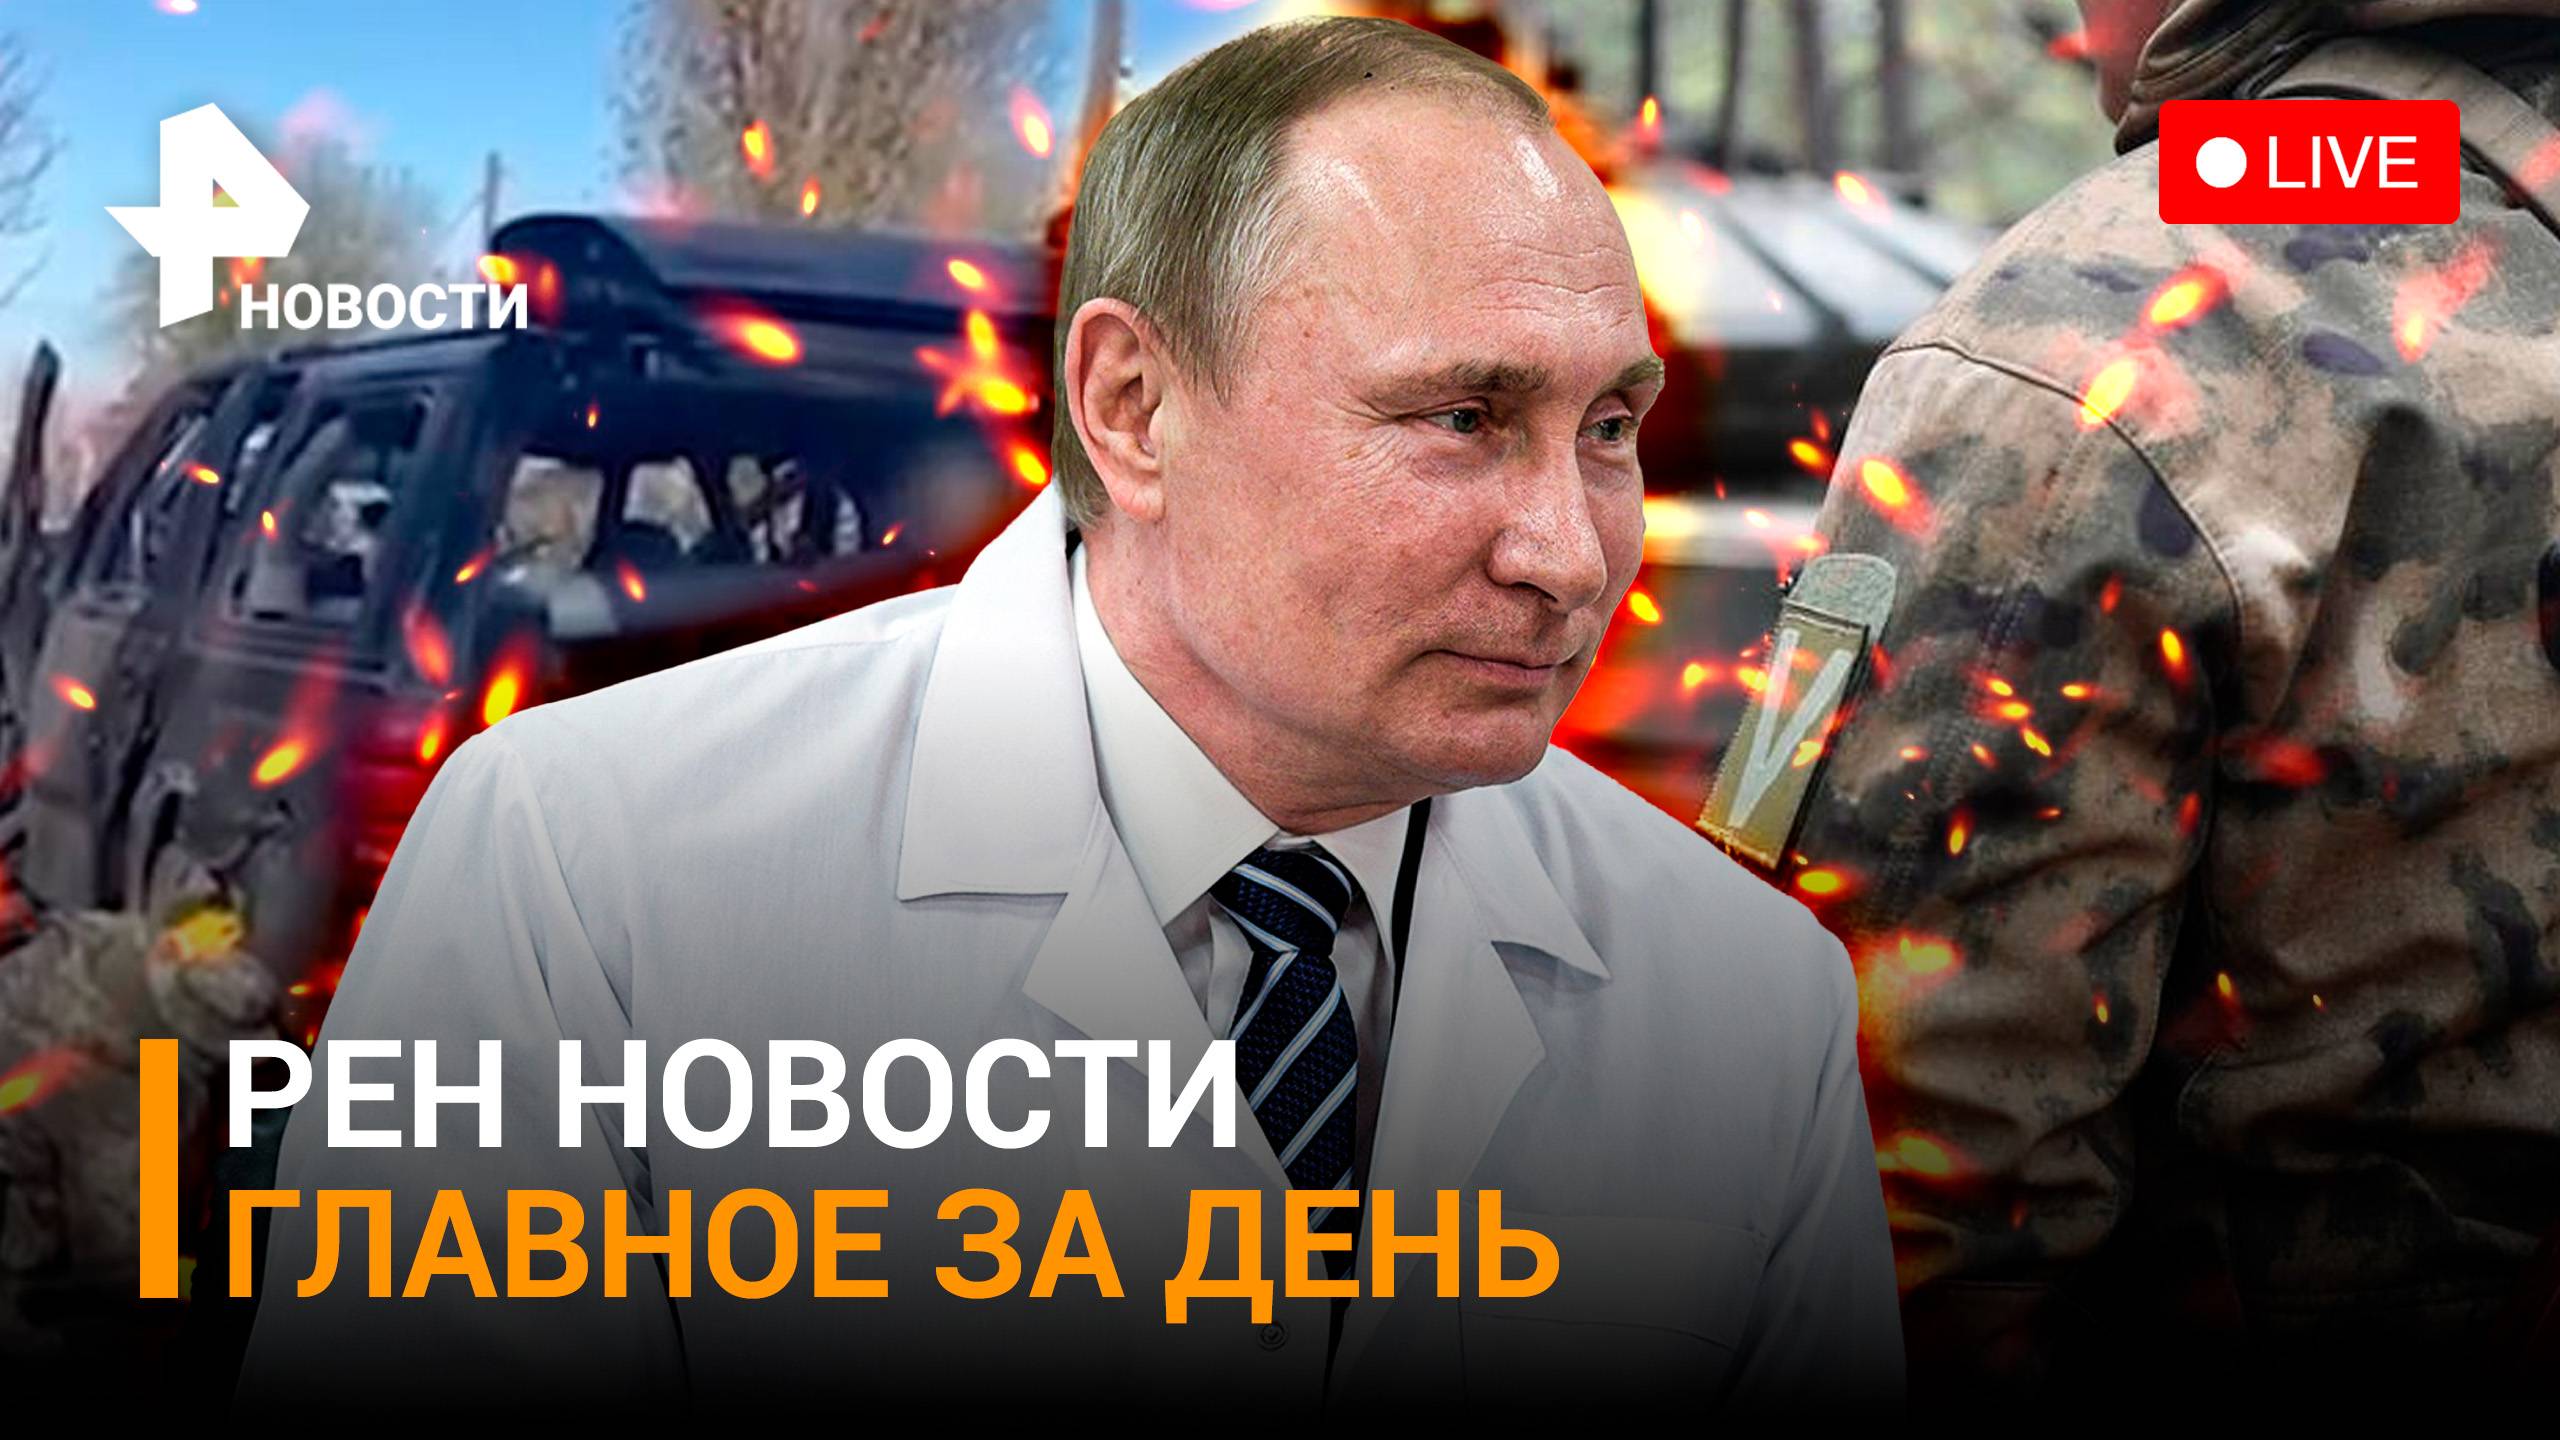 Киев признался в теракте, в котором погиб депутат ЛНР. Новый центр ядерной медицины/ ГЛАВНОЕ ЗА ДЕНЬ